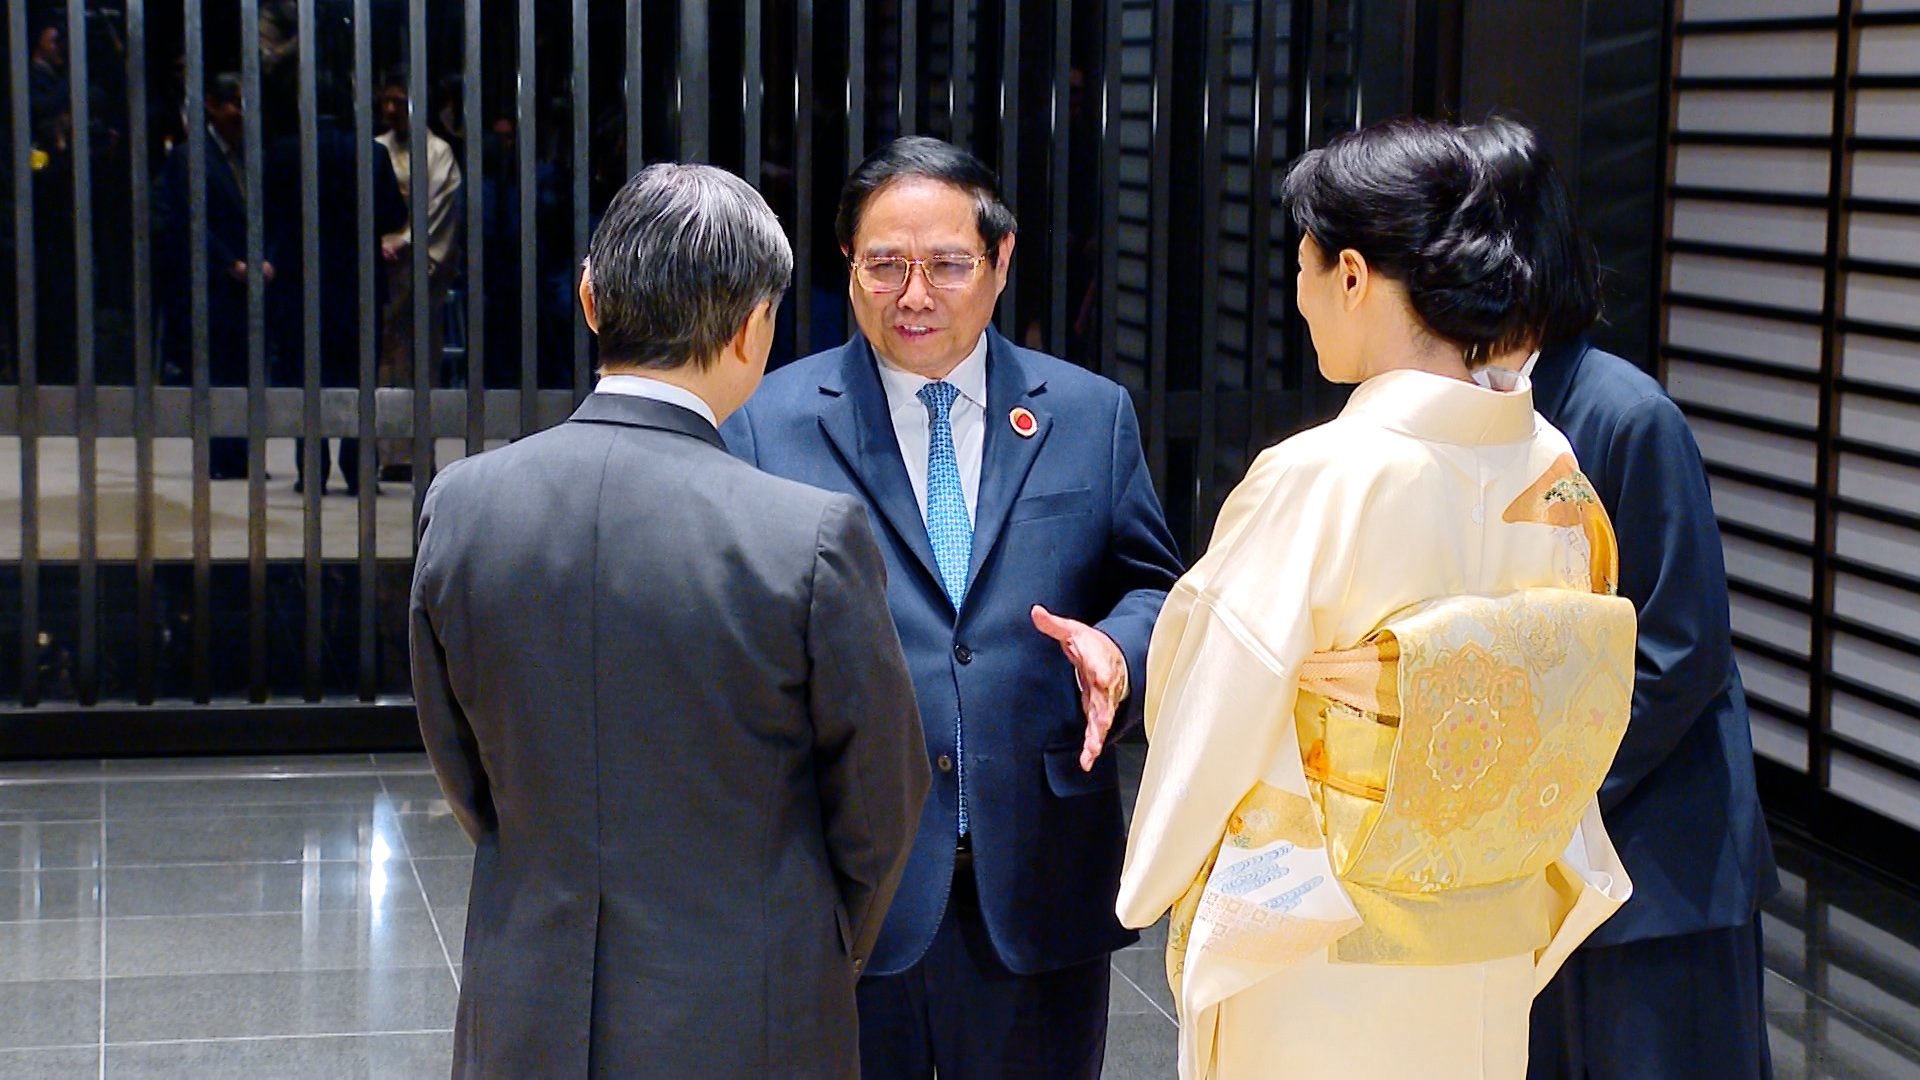 Thủ tướng Phạm Minh Chính cảm ơn những tình cảm tốt đẹp và sự quan tâm sâu sắc mà Nhà vua, Hoàng hậu, cũng như các thành viên Hoàng gia Nhật Bản đã dành cho nhân dân Việt Nam và mối quan hệ hữu nghị, hợp tác Việt Nam-Nhật Bản trong nhiều năm qua - Ảnh: VGP/Nhật Bắc